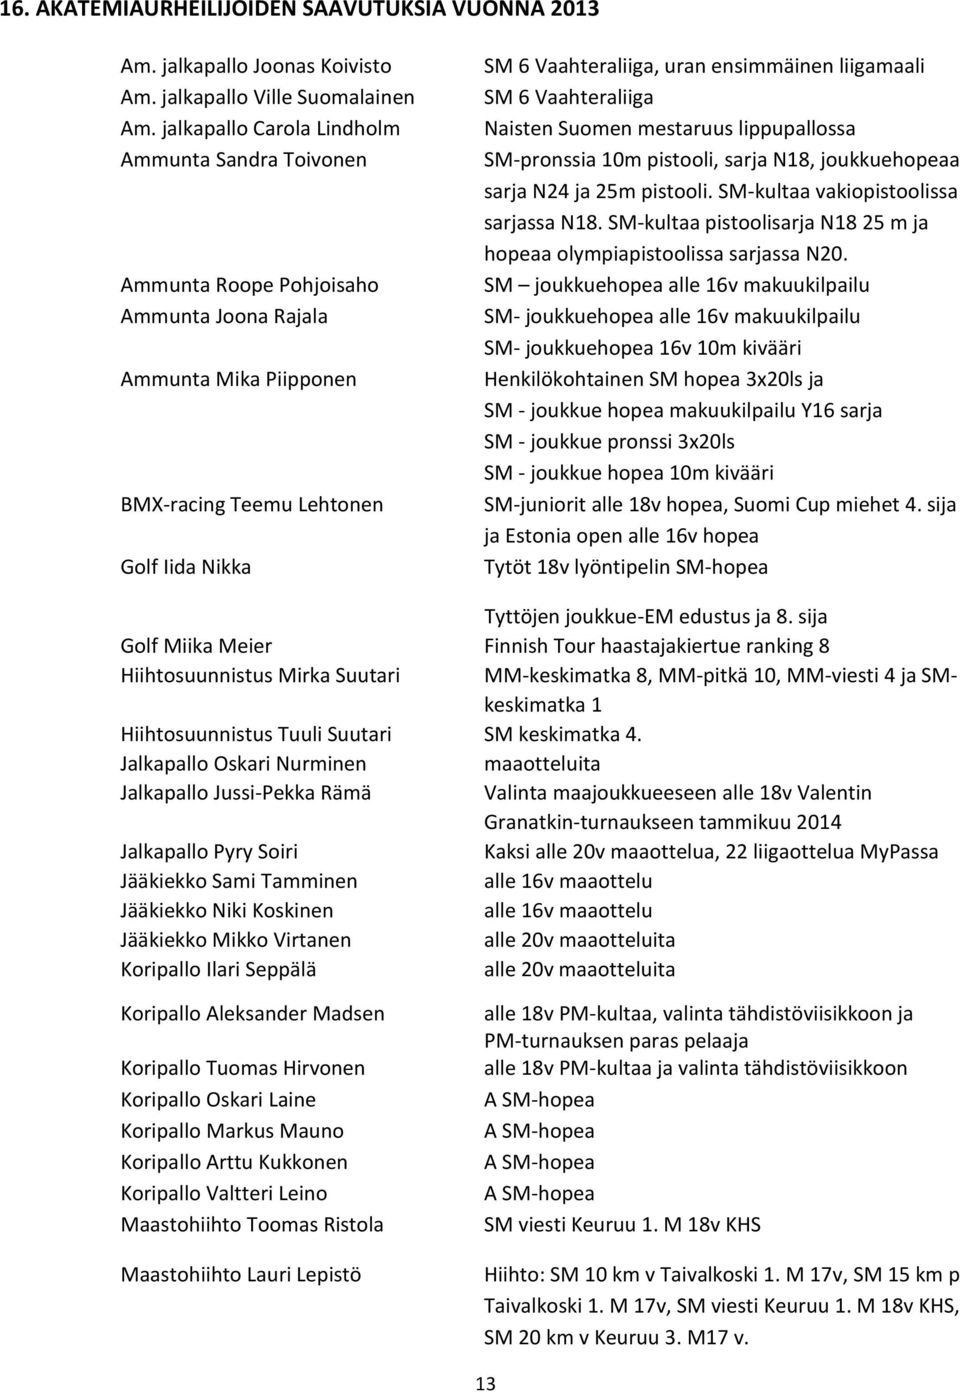 liigamaali SM 6 Vaahteraliiga Naisten Suomen mestaruus lippupallossa SM-pronssia 10m pistooli, sarja N18, joukkuehopeaa sarja N24 ja 25m pistooli. SM-kultaa vakiopistoolissa sarjassa N18.